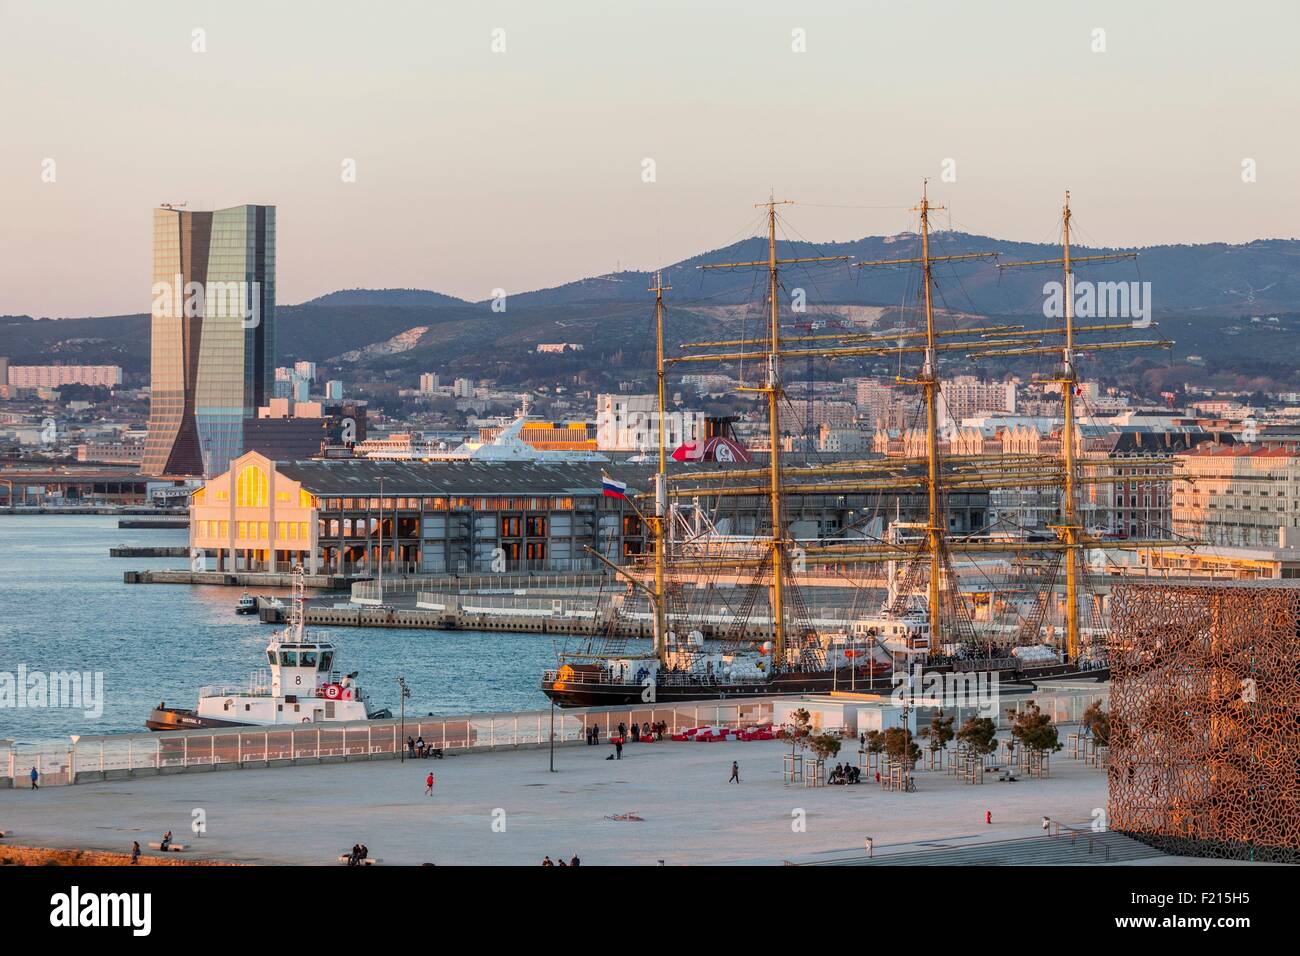 Frankreich, Bouches du Rhone, Marseille, J4, CMA CGM Turm Architektin Zaha Hadid, und die russischen Krusenstern Segelboot 4 Pole, der ältesten noch aktiven und eine der längsten in der Welt Stockfoto